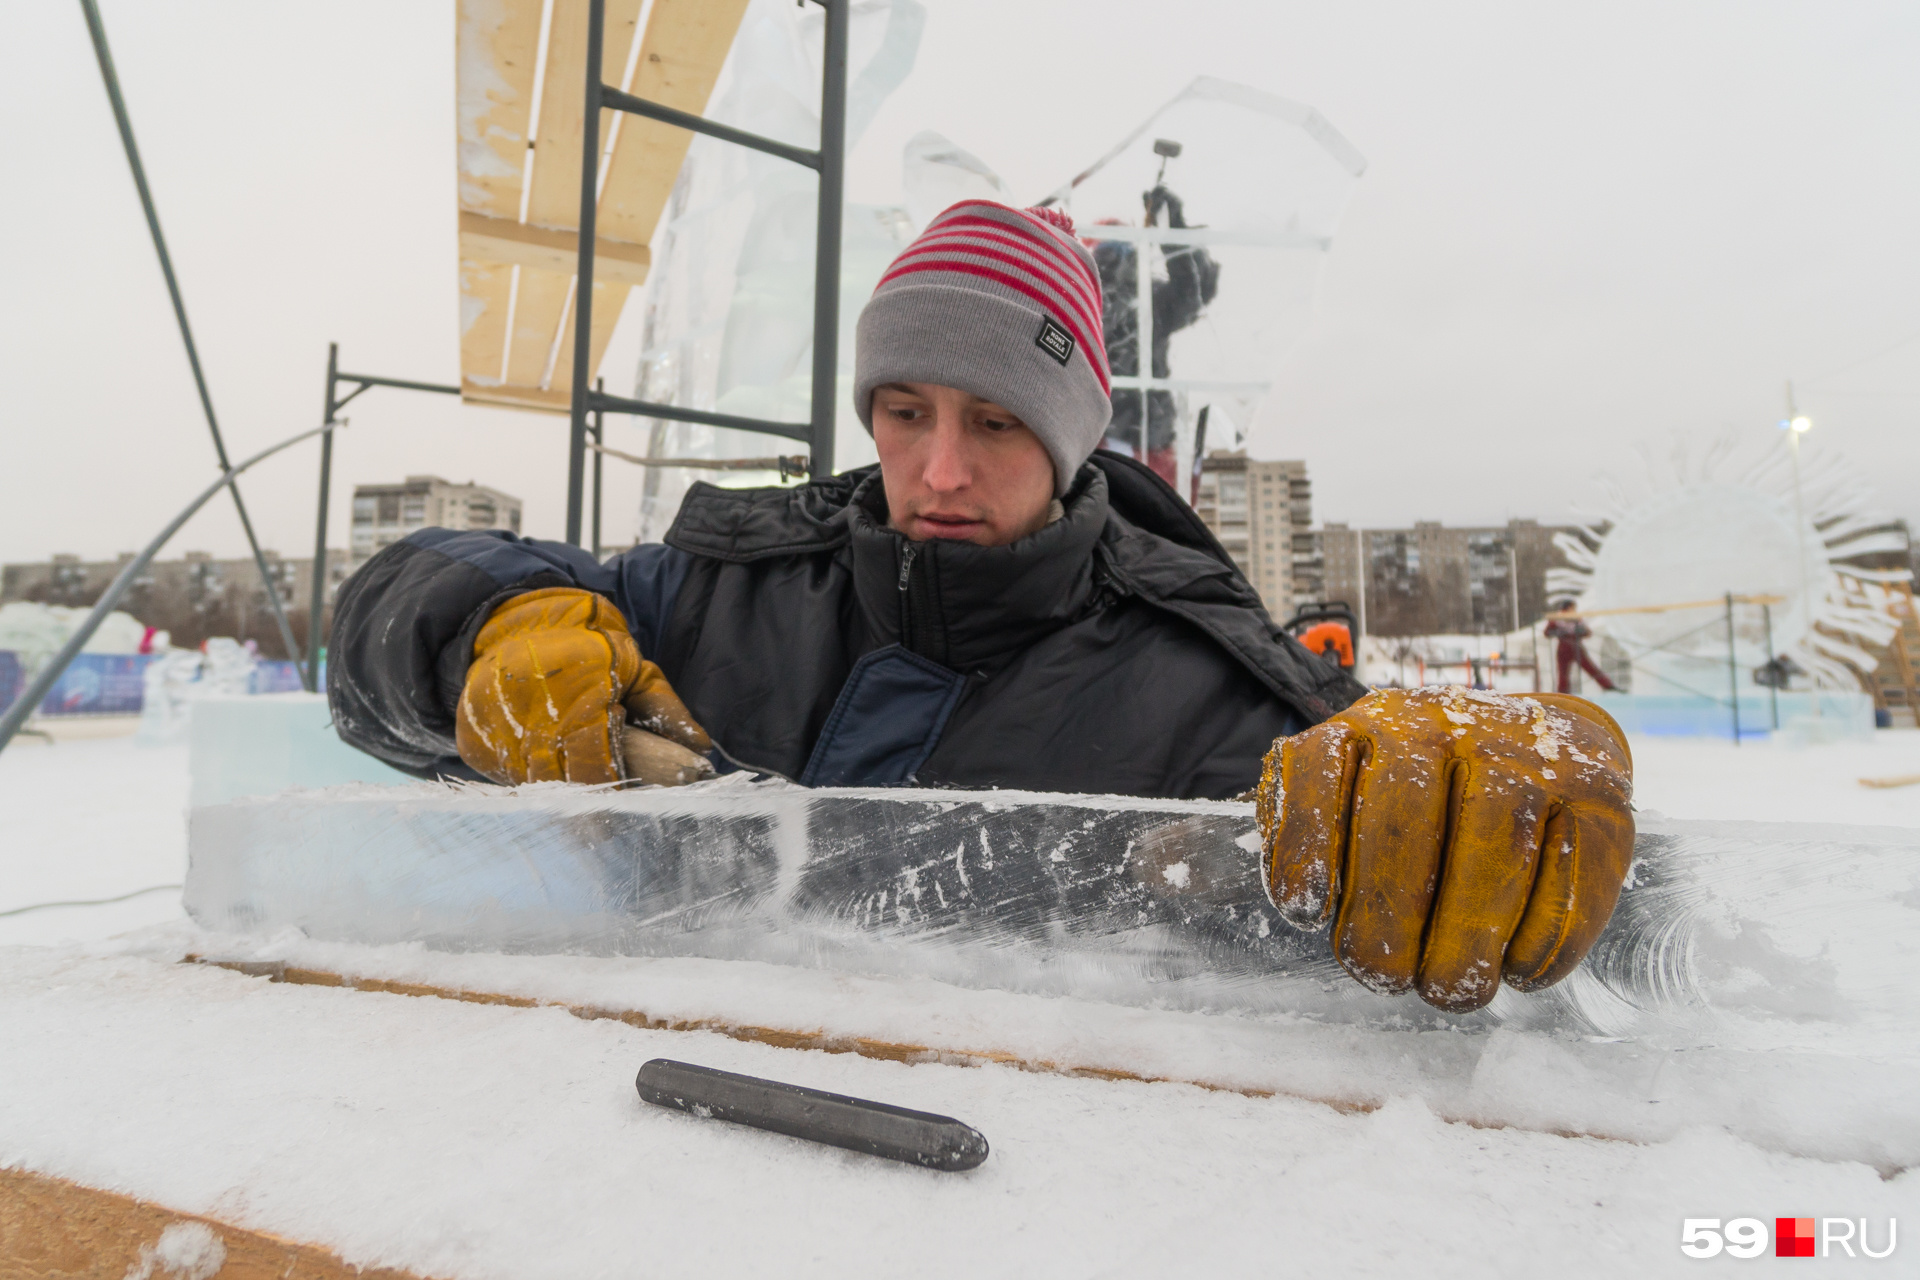 Толстые перчатки помогают сохранить тепло во время работы на морозе